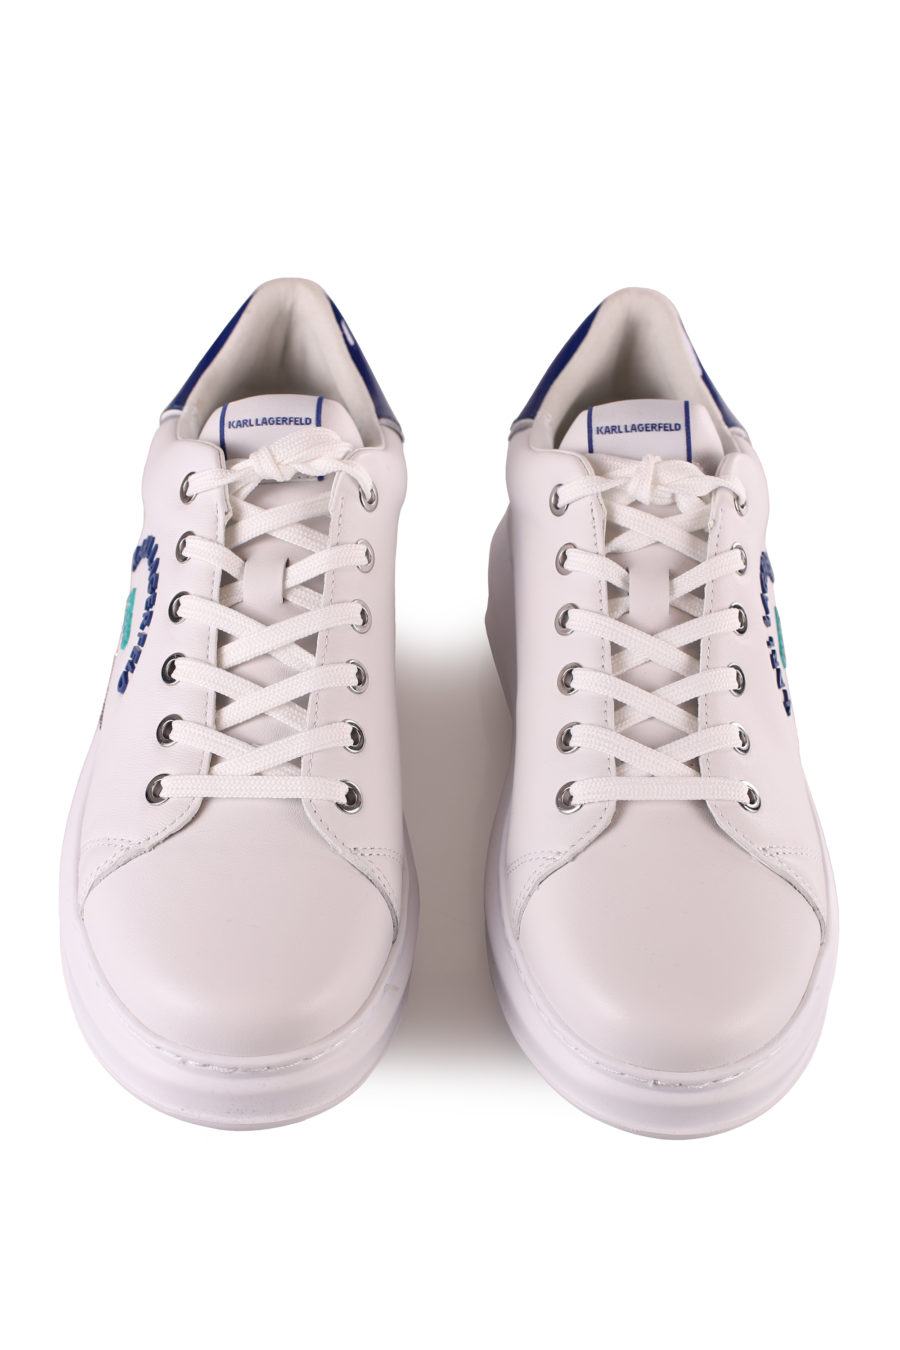 Zapatillas blancas "Kapri" logo metalizado - IMG 4591